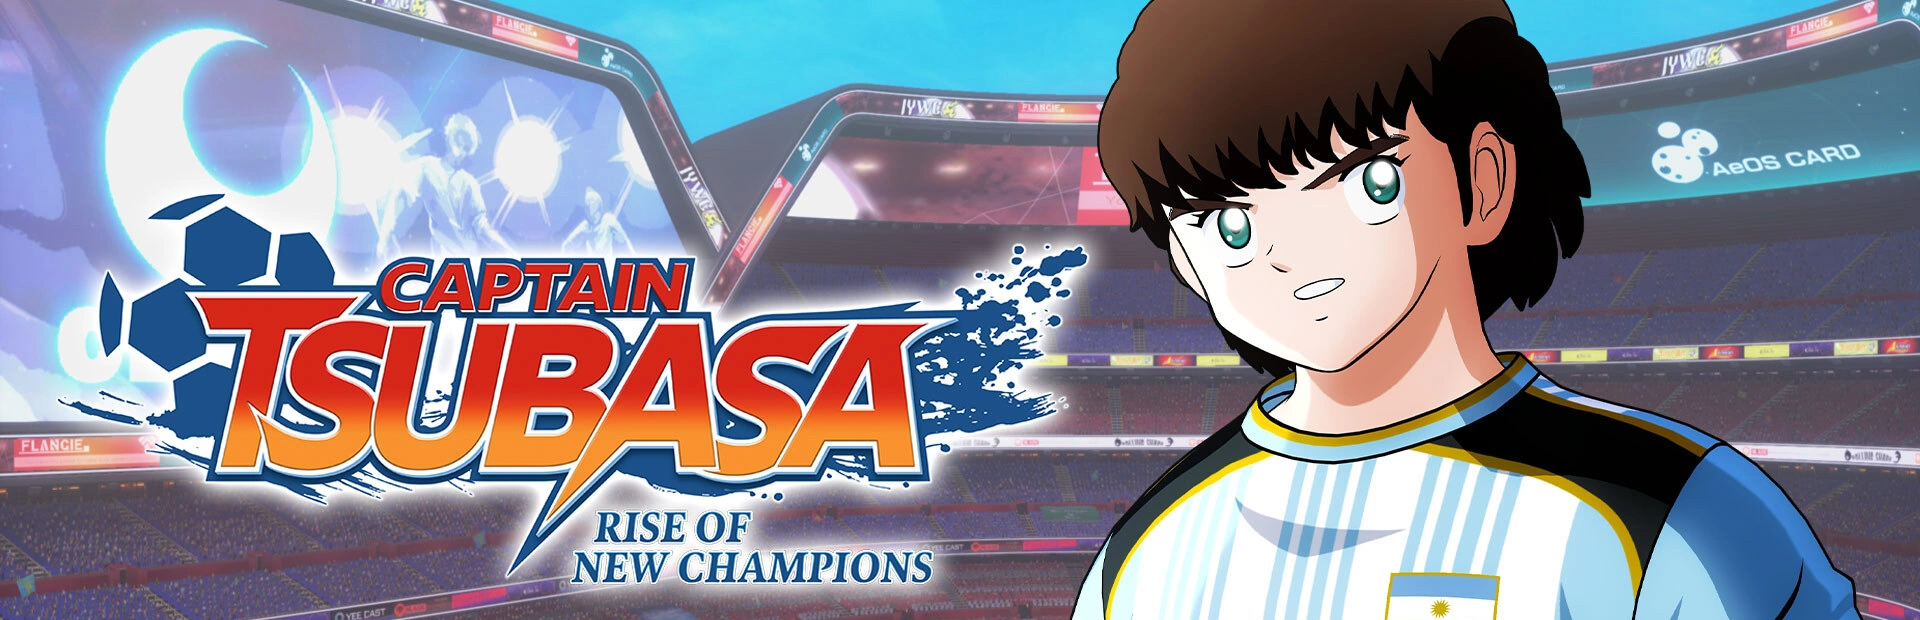 دانلود بک آپ بازی Captain Tsubasa: Rise of New Champions برای کامپیوتر  | گیمباتو